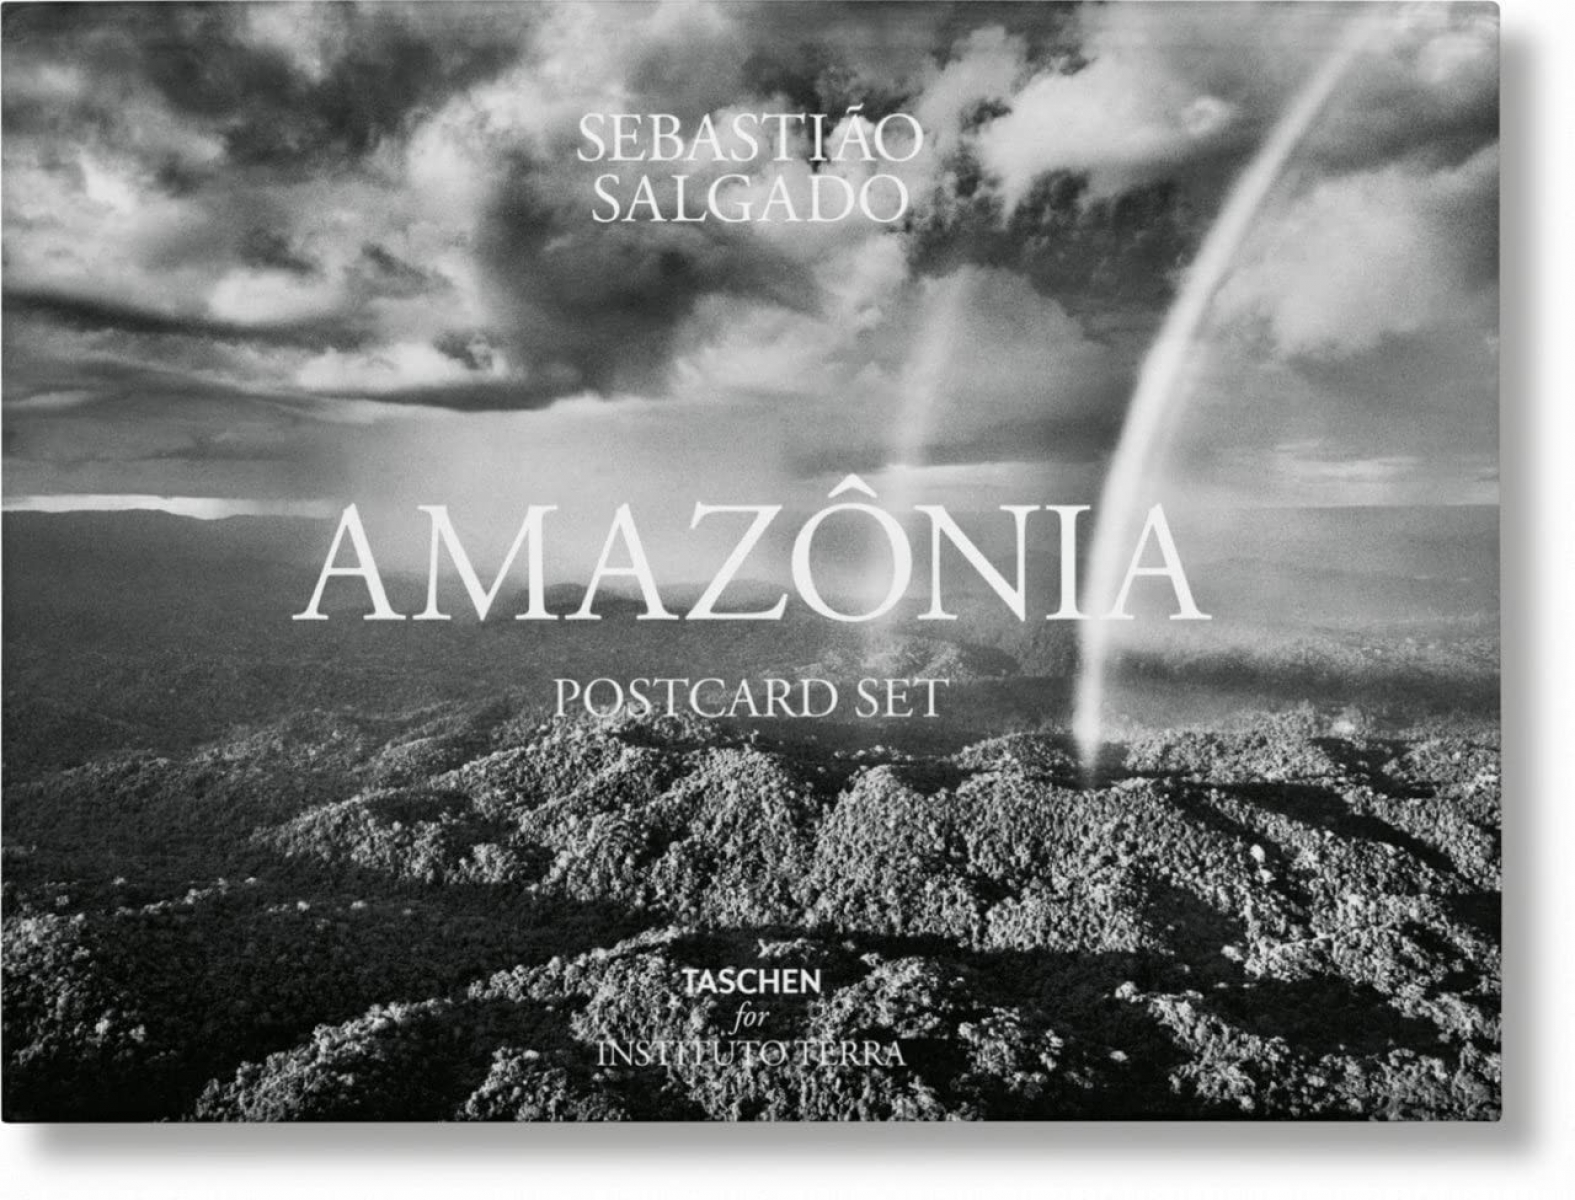 Salgado, Sebastiao Sebastiao salgado. amazonia. postcard set x 50 